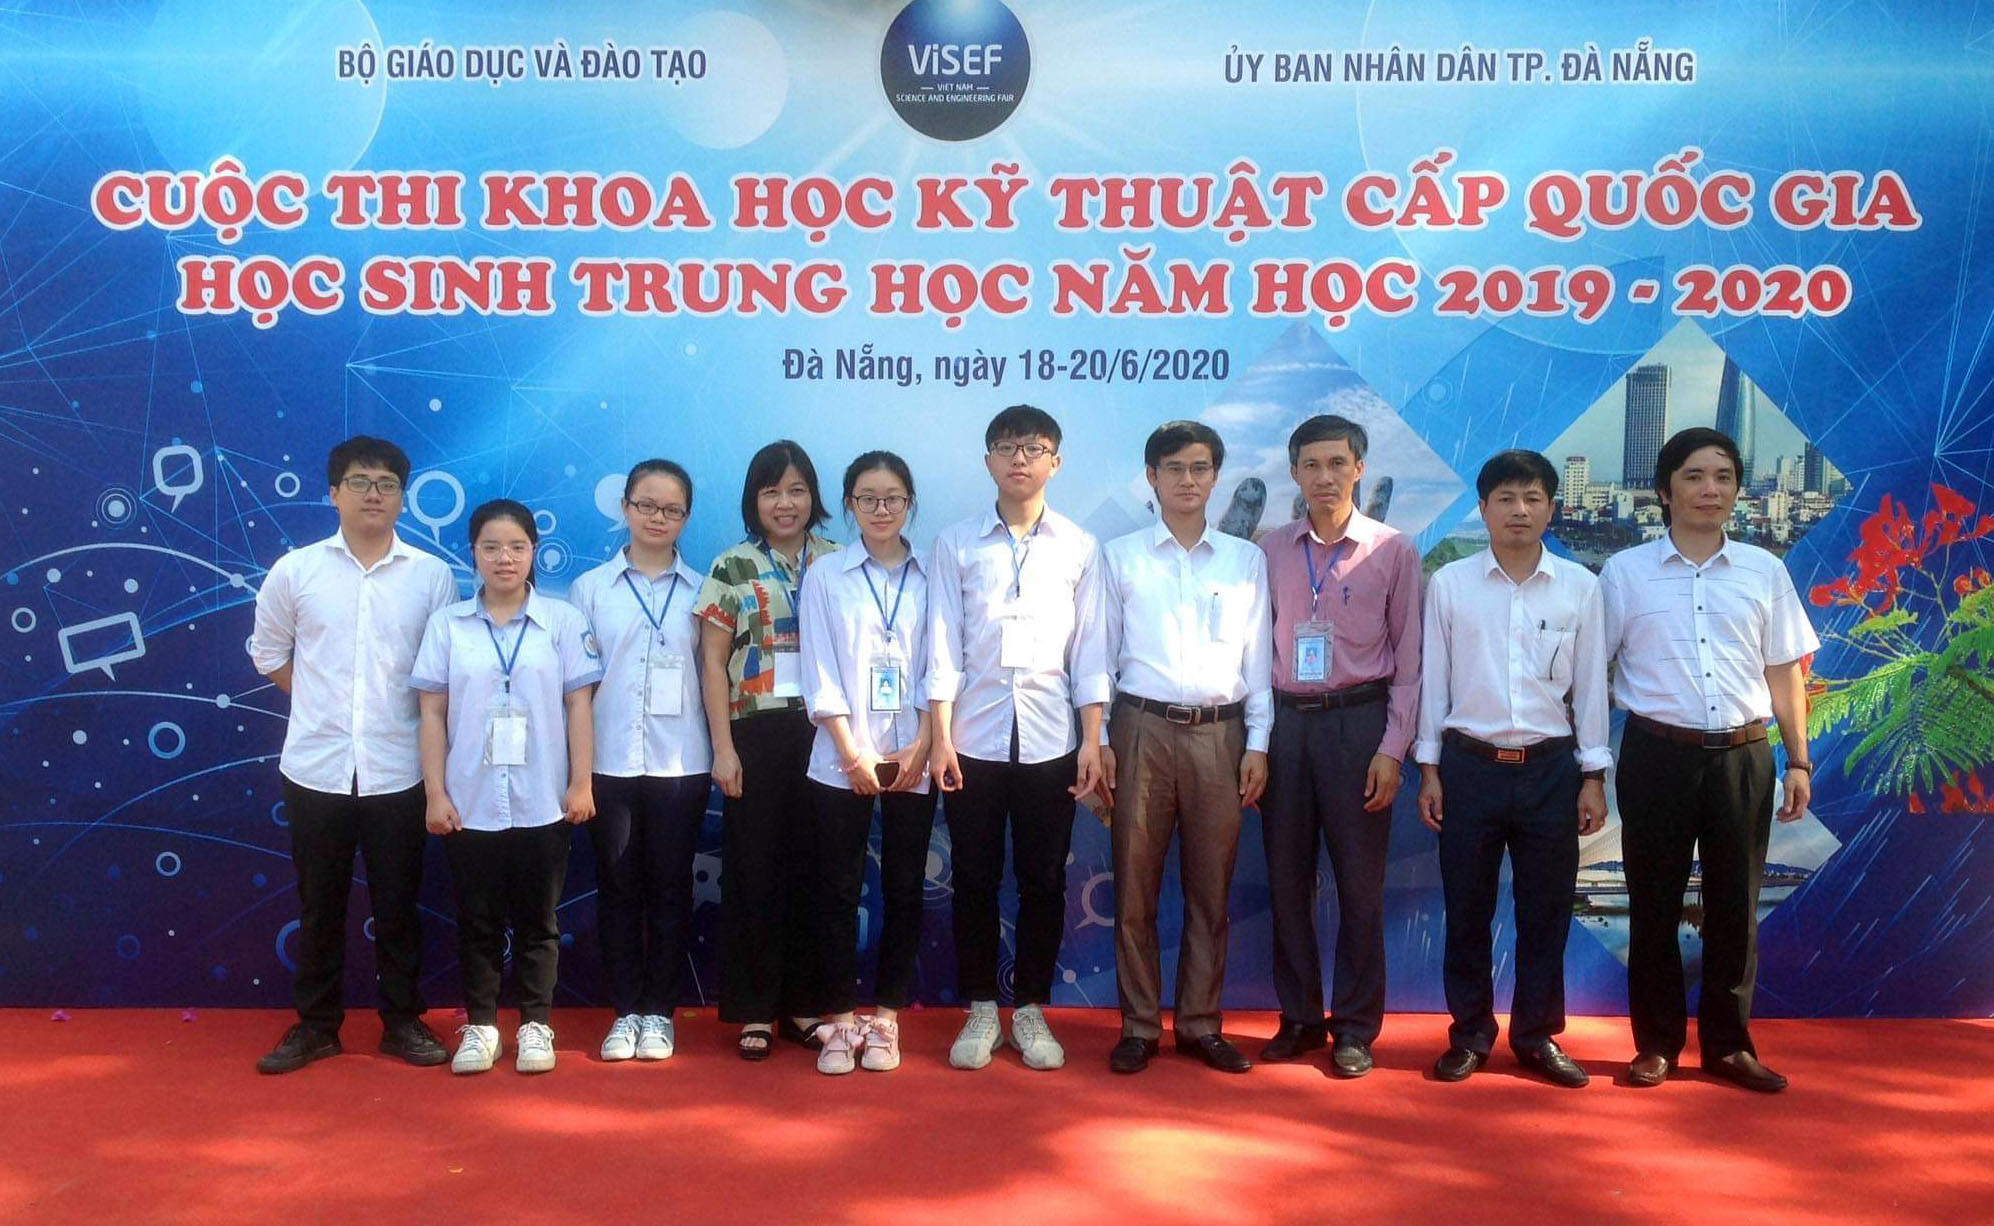 Đoàn học sinh và giáo viên Nghệ An tham dự cuộc thi tại Thành phố Đà Nẵng. Ảnh: PV